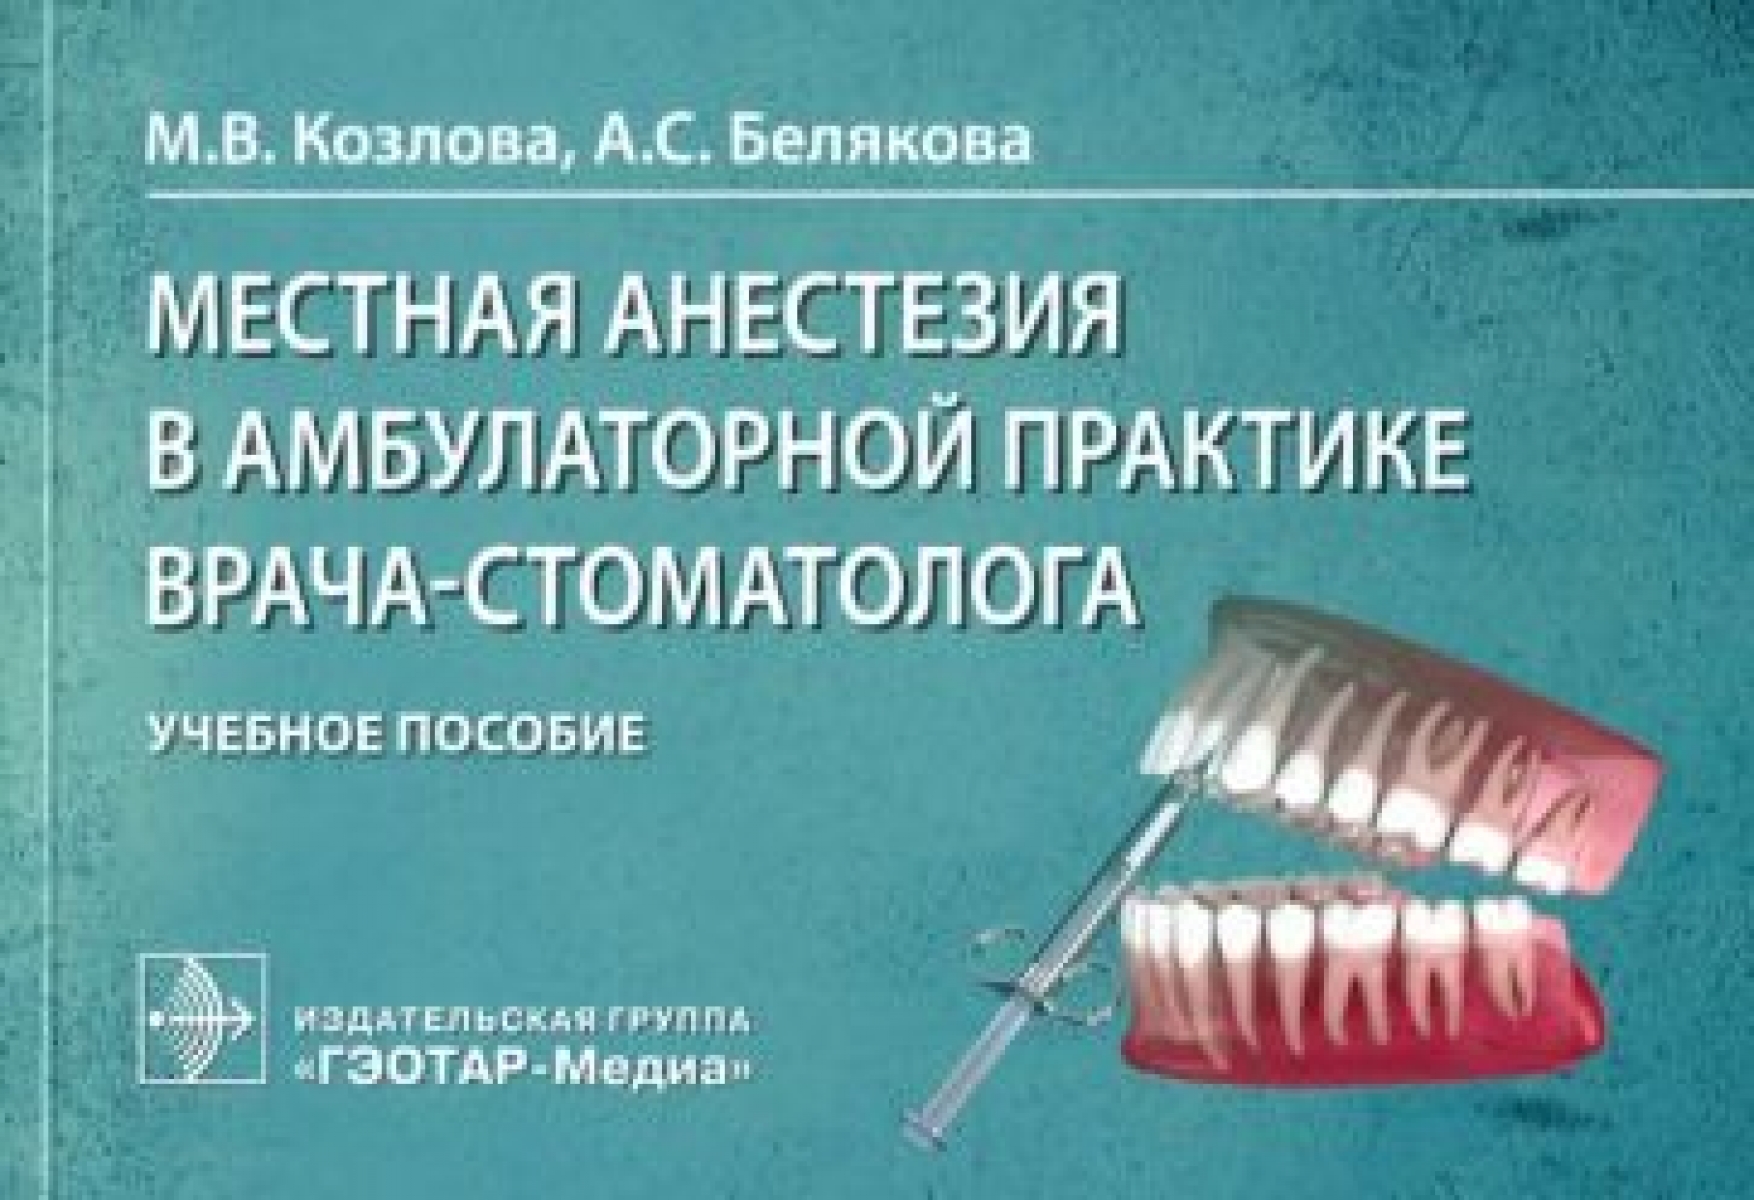 Козлова М.В., Белякова А.С. Местная анестезия в амбулаторной практике врача-стоматолога 